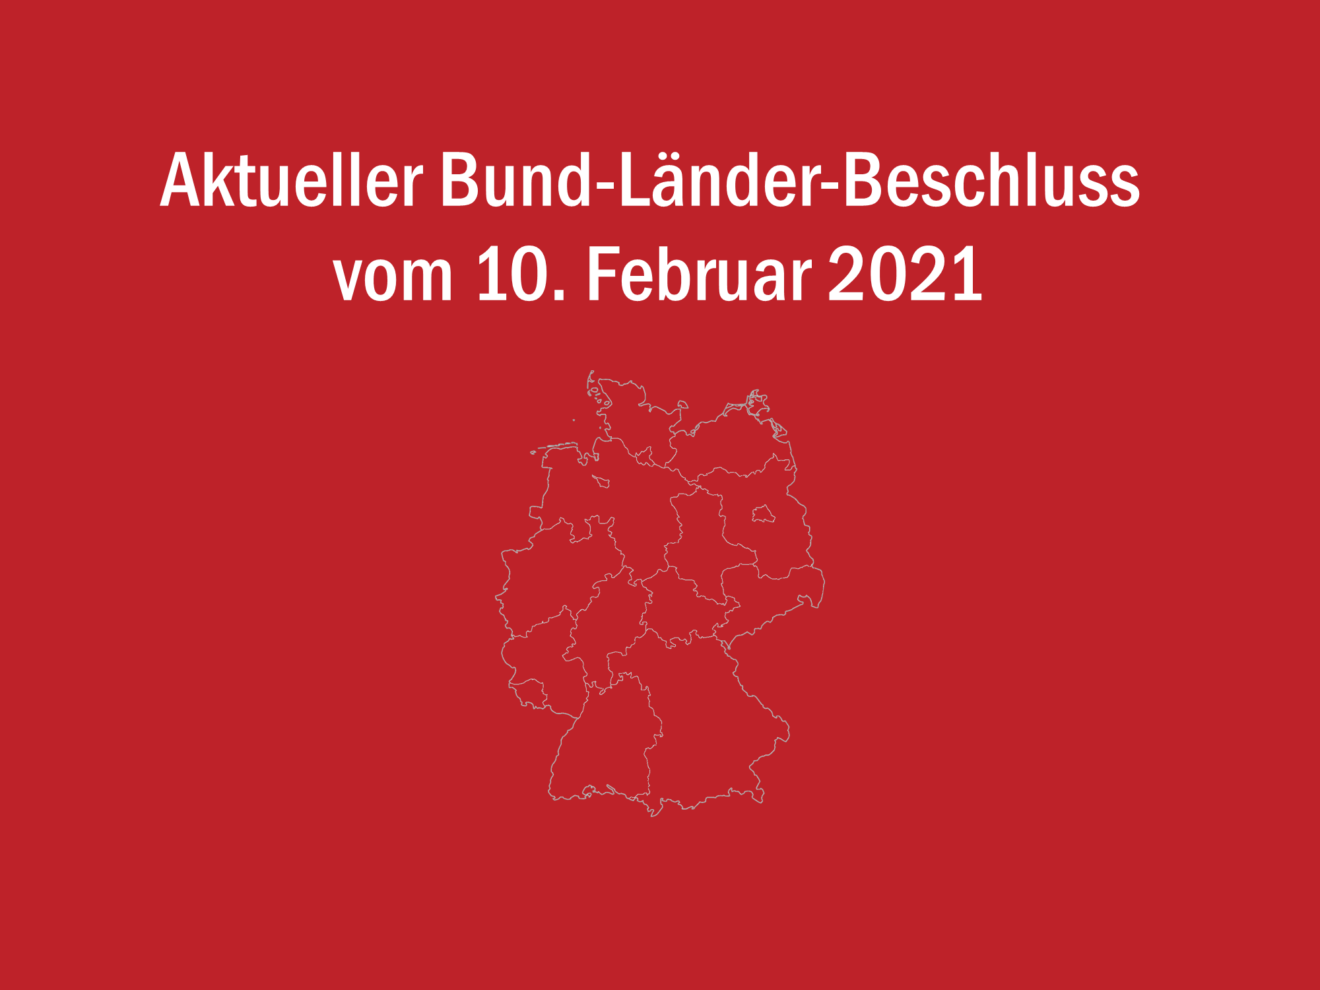 Bund-Länder-Beschluss vom 10. Februar 2021 - Lockdown bis 7. März 2021 verlängert und Überbrückungshilfe III gestartet